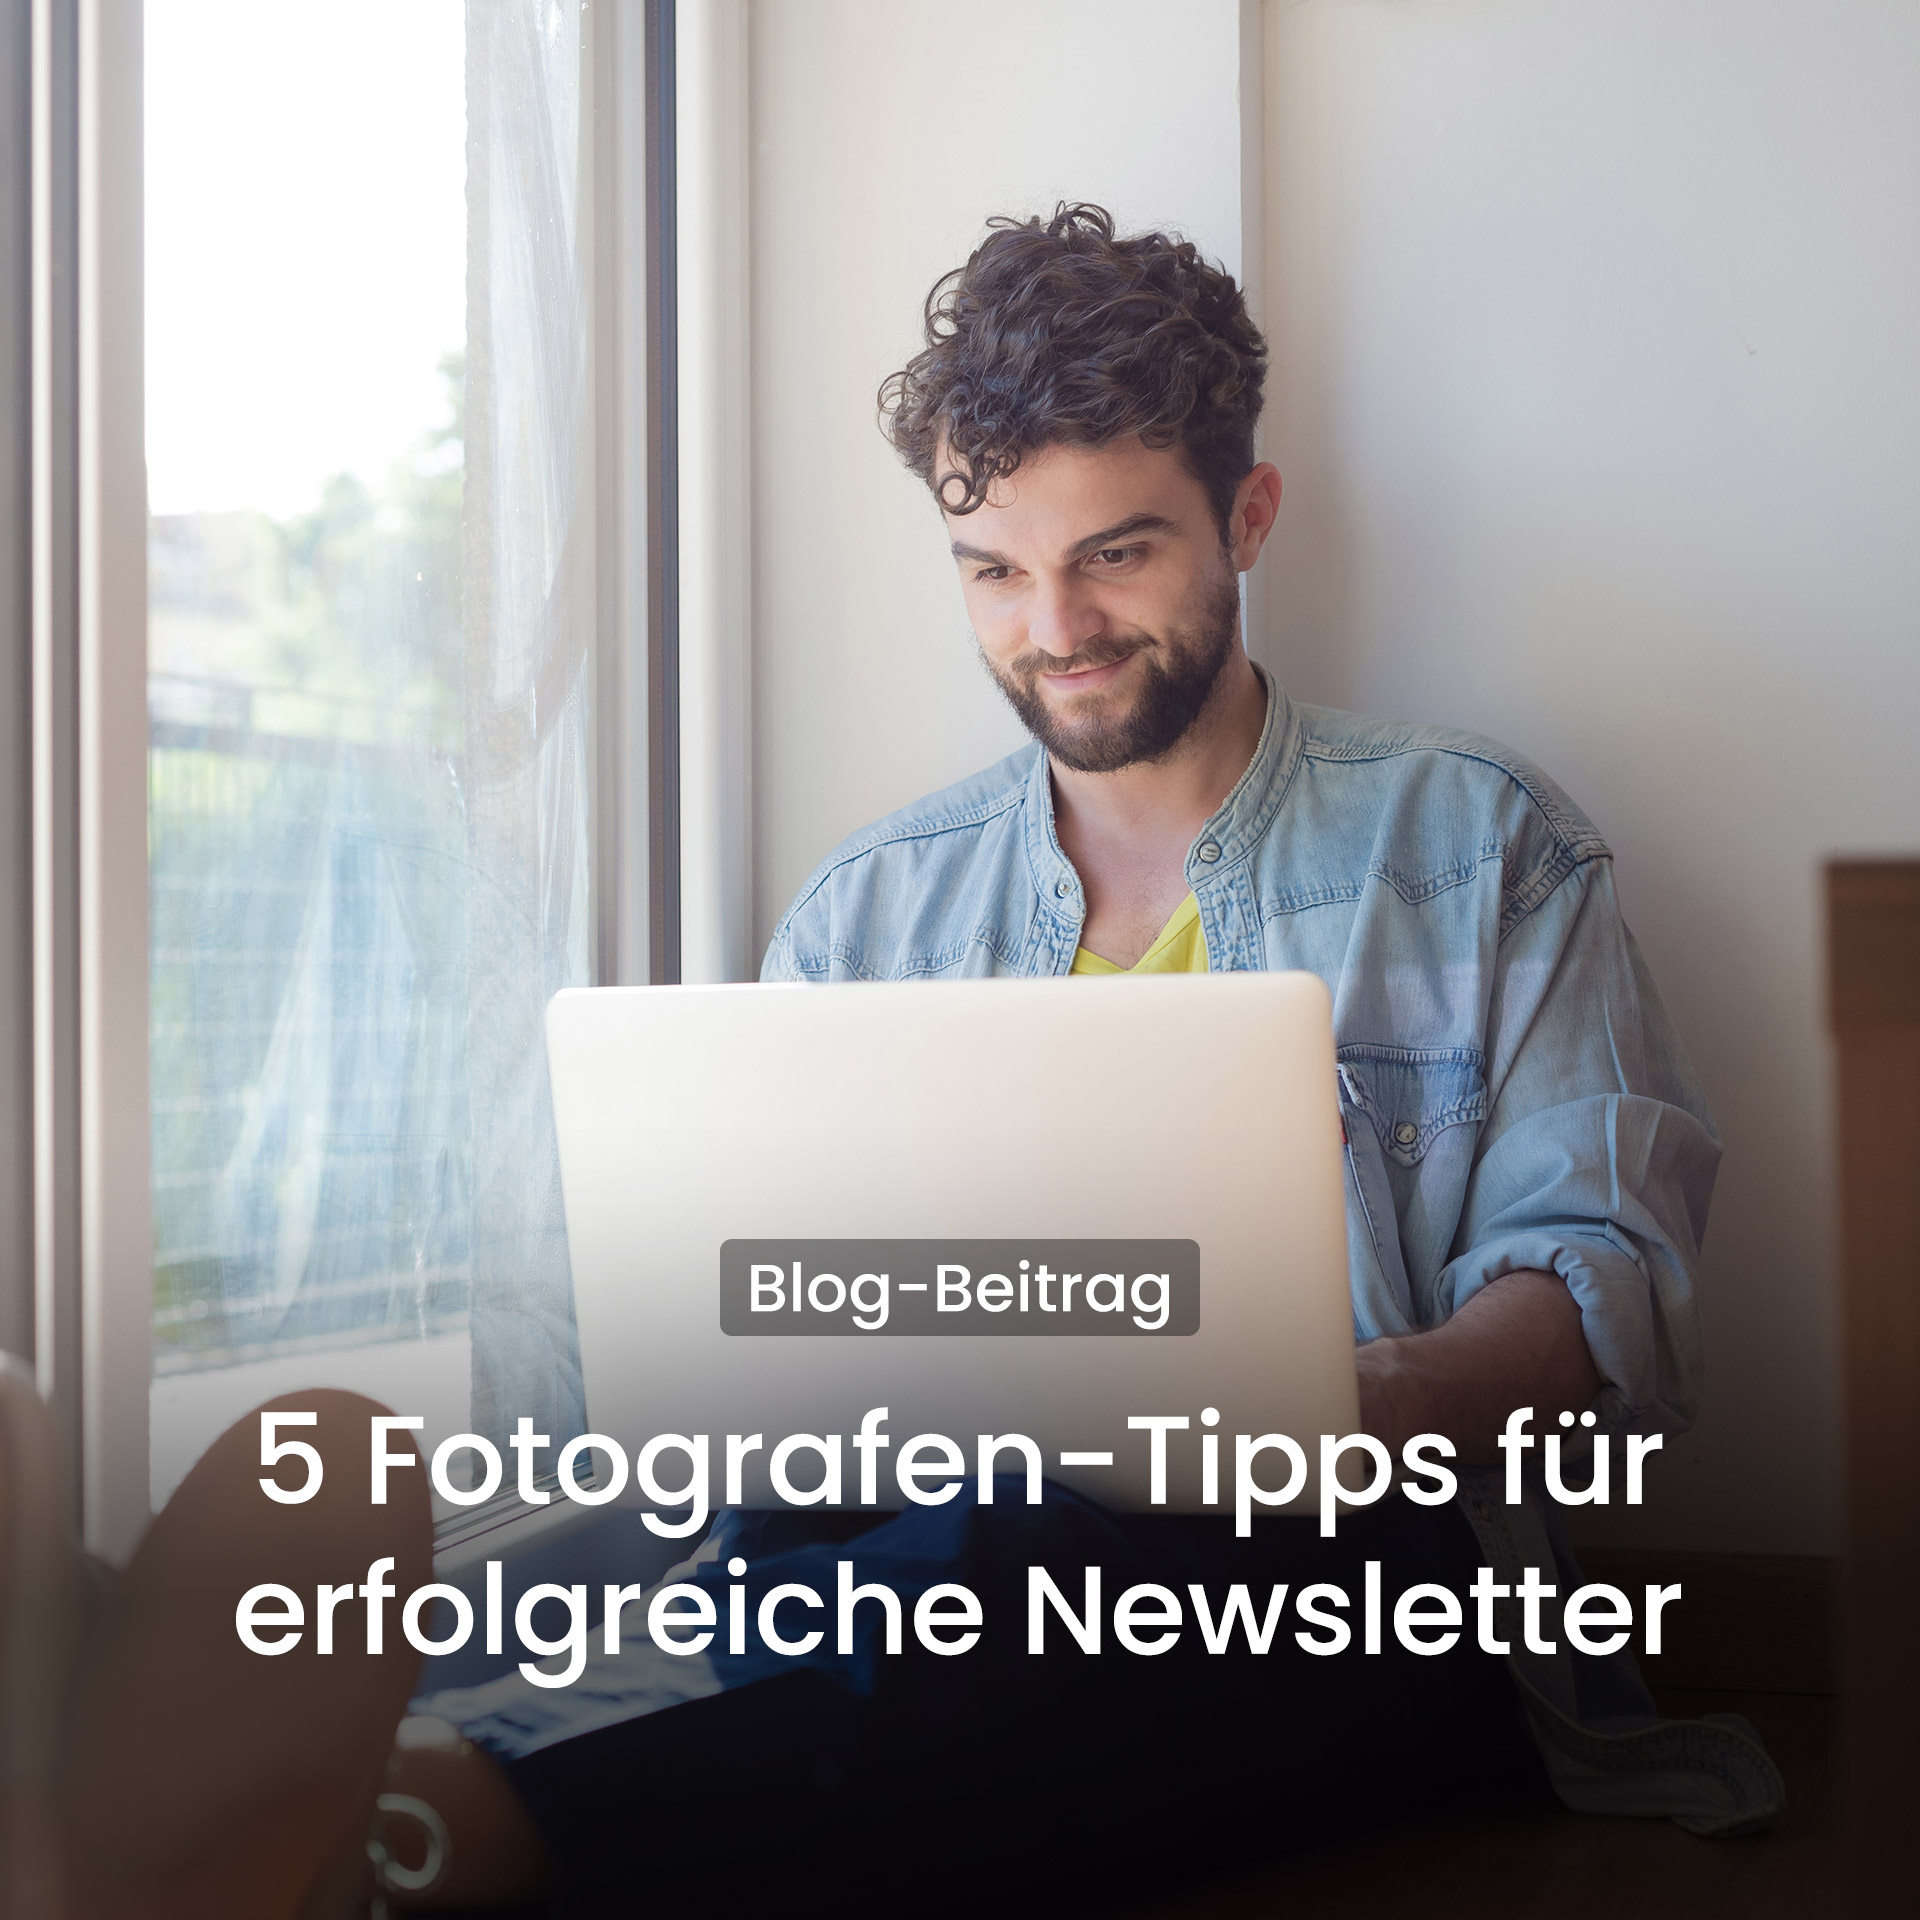 5 Newsletter-Tipps für erfolgreiche Fotografen